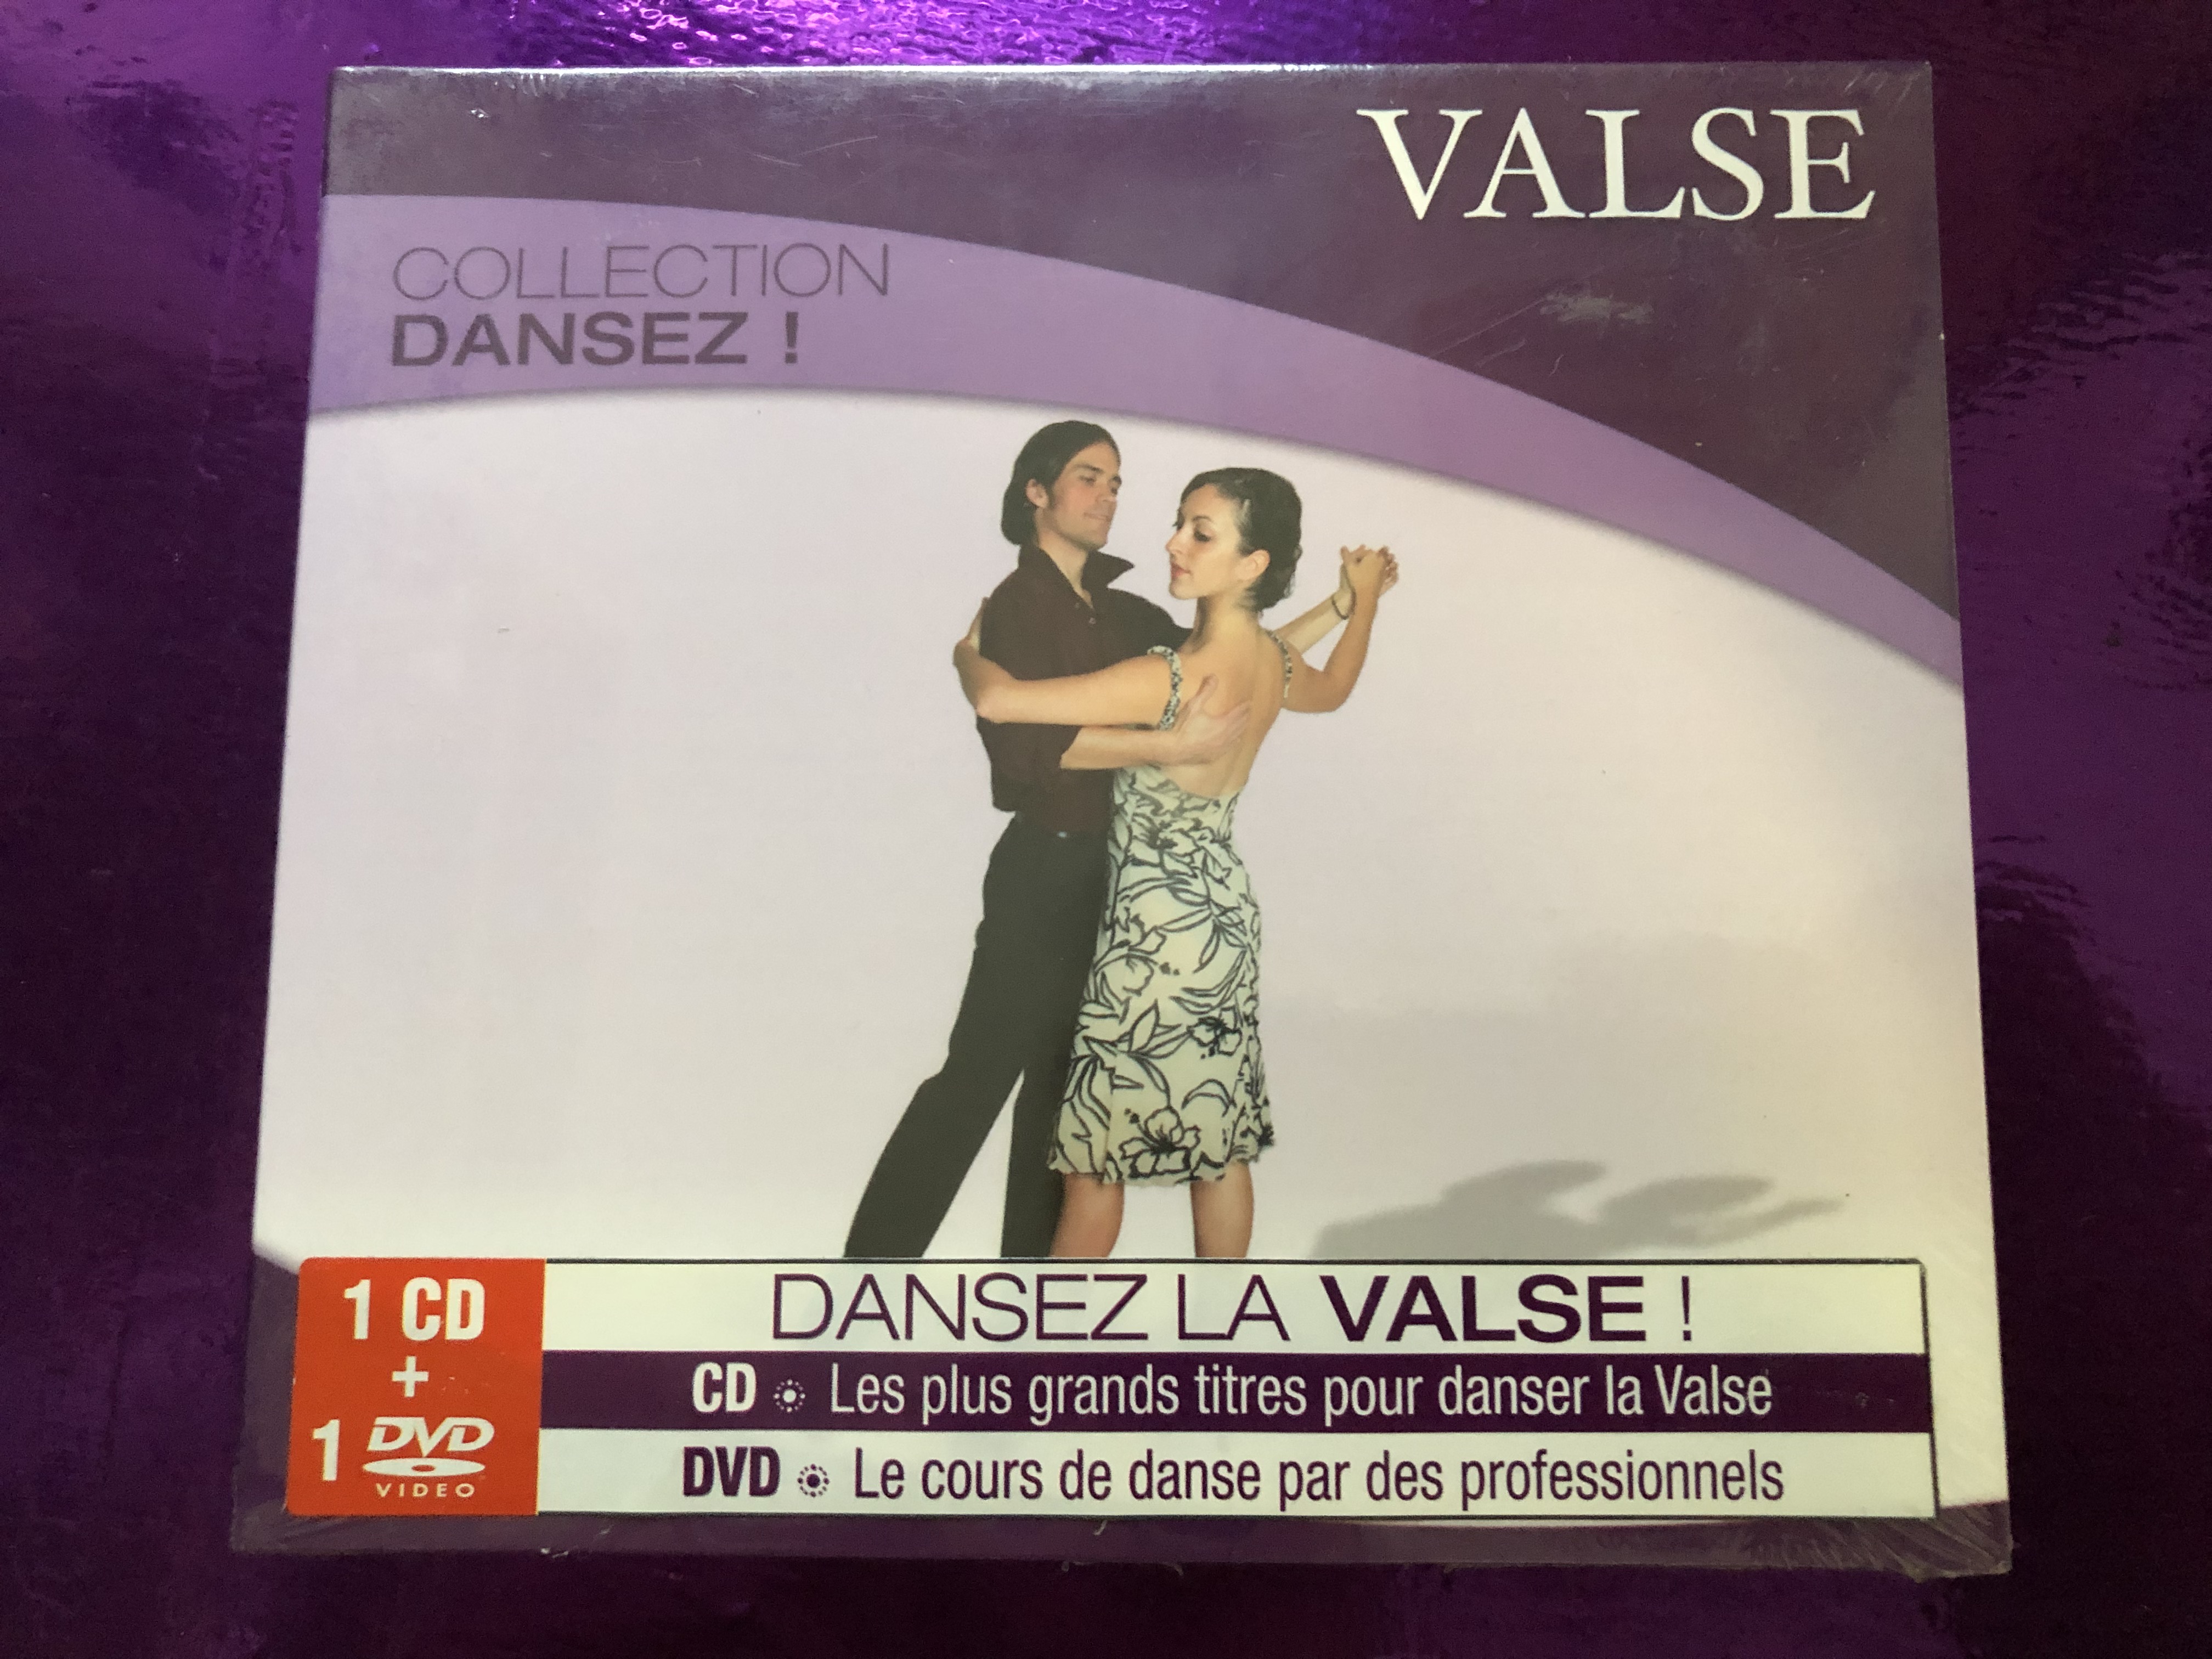 valse-collection-dansez-dansez-la-valse-cd-les-plus-grands-titres-pour-danser-la-valse-dvd-le-cours-de-danse-par-des-professionnels-wagram-music-audio-cd-dvd-cd-2008-wag-737-1-.jpg